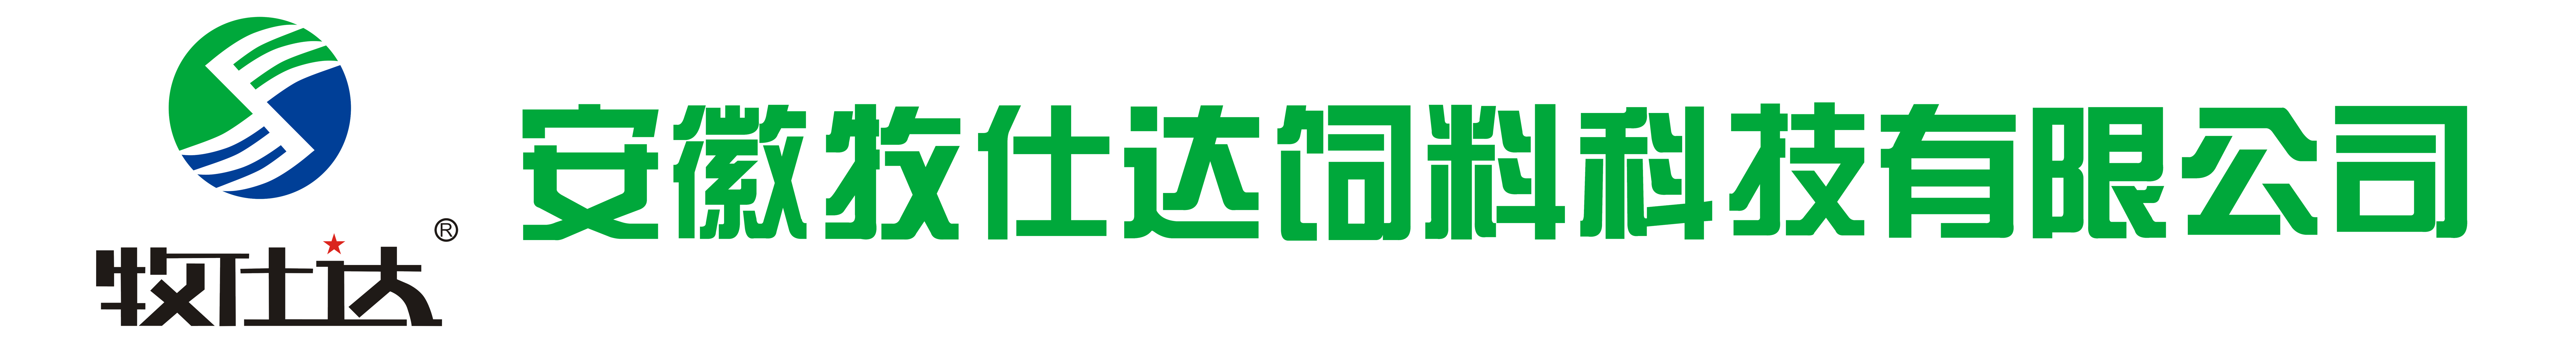 长logo